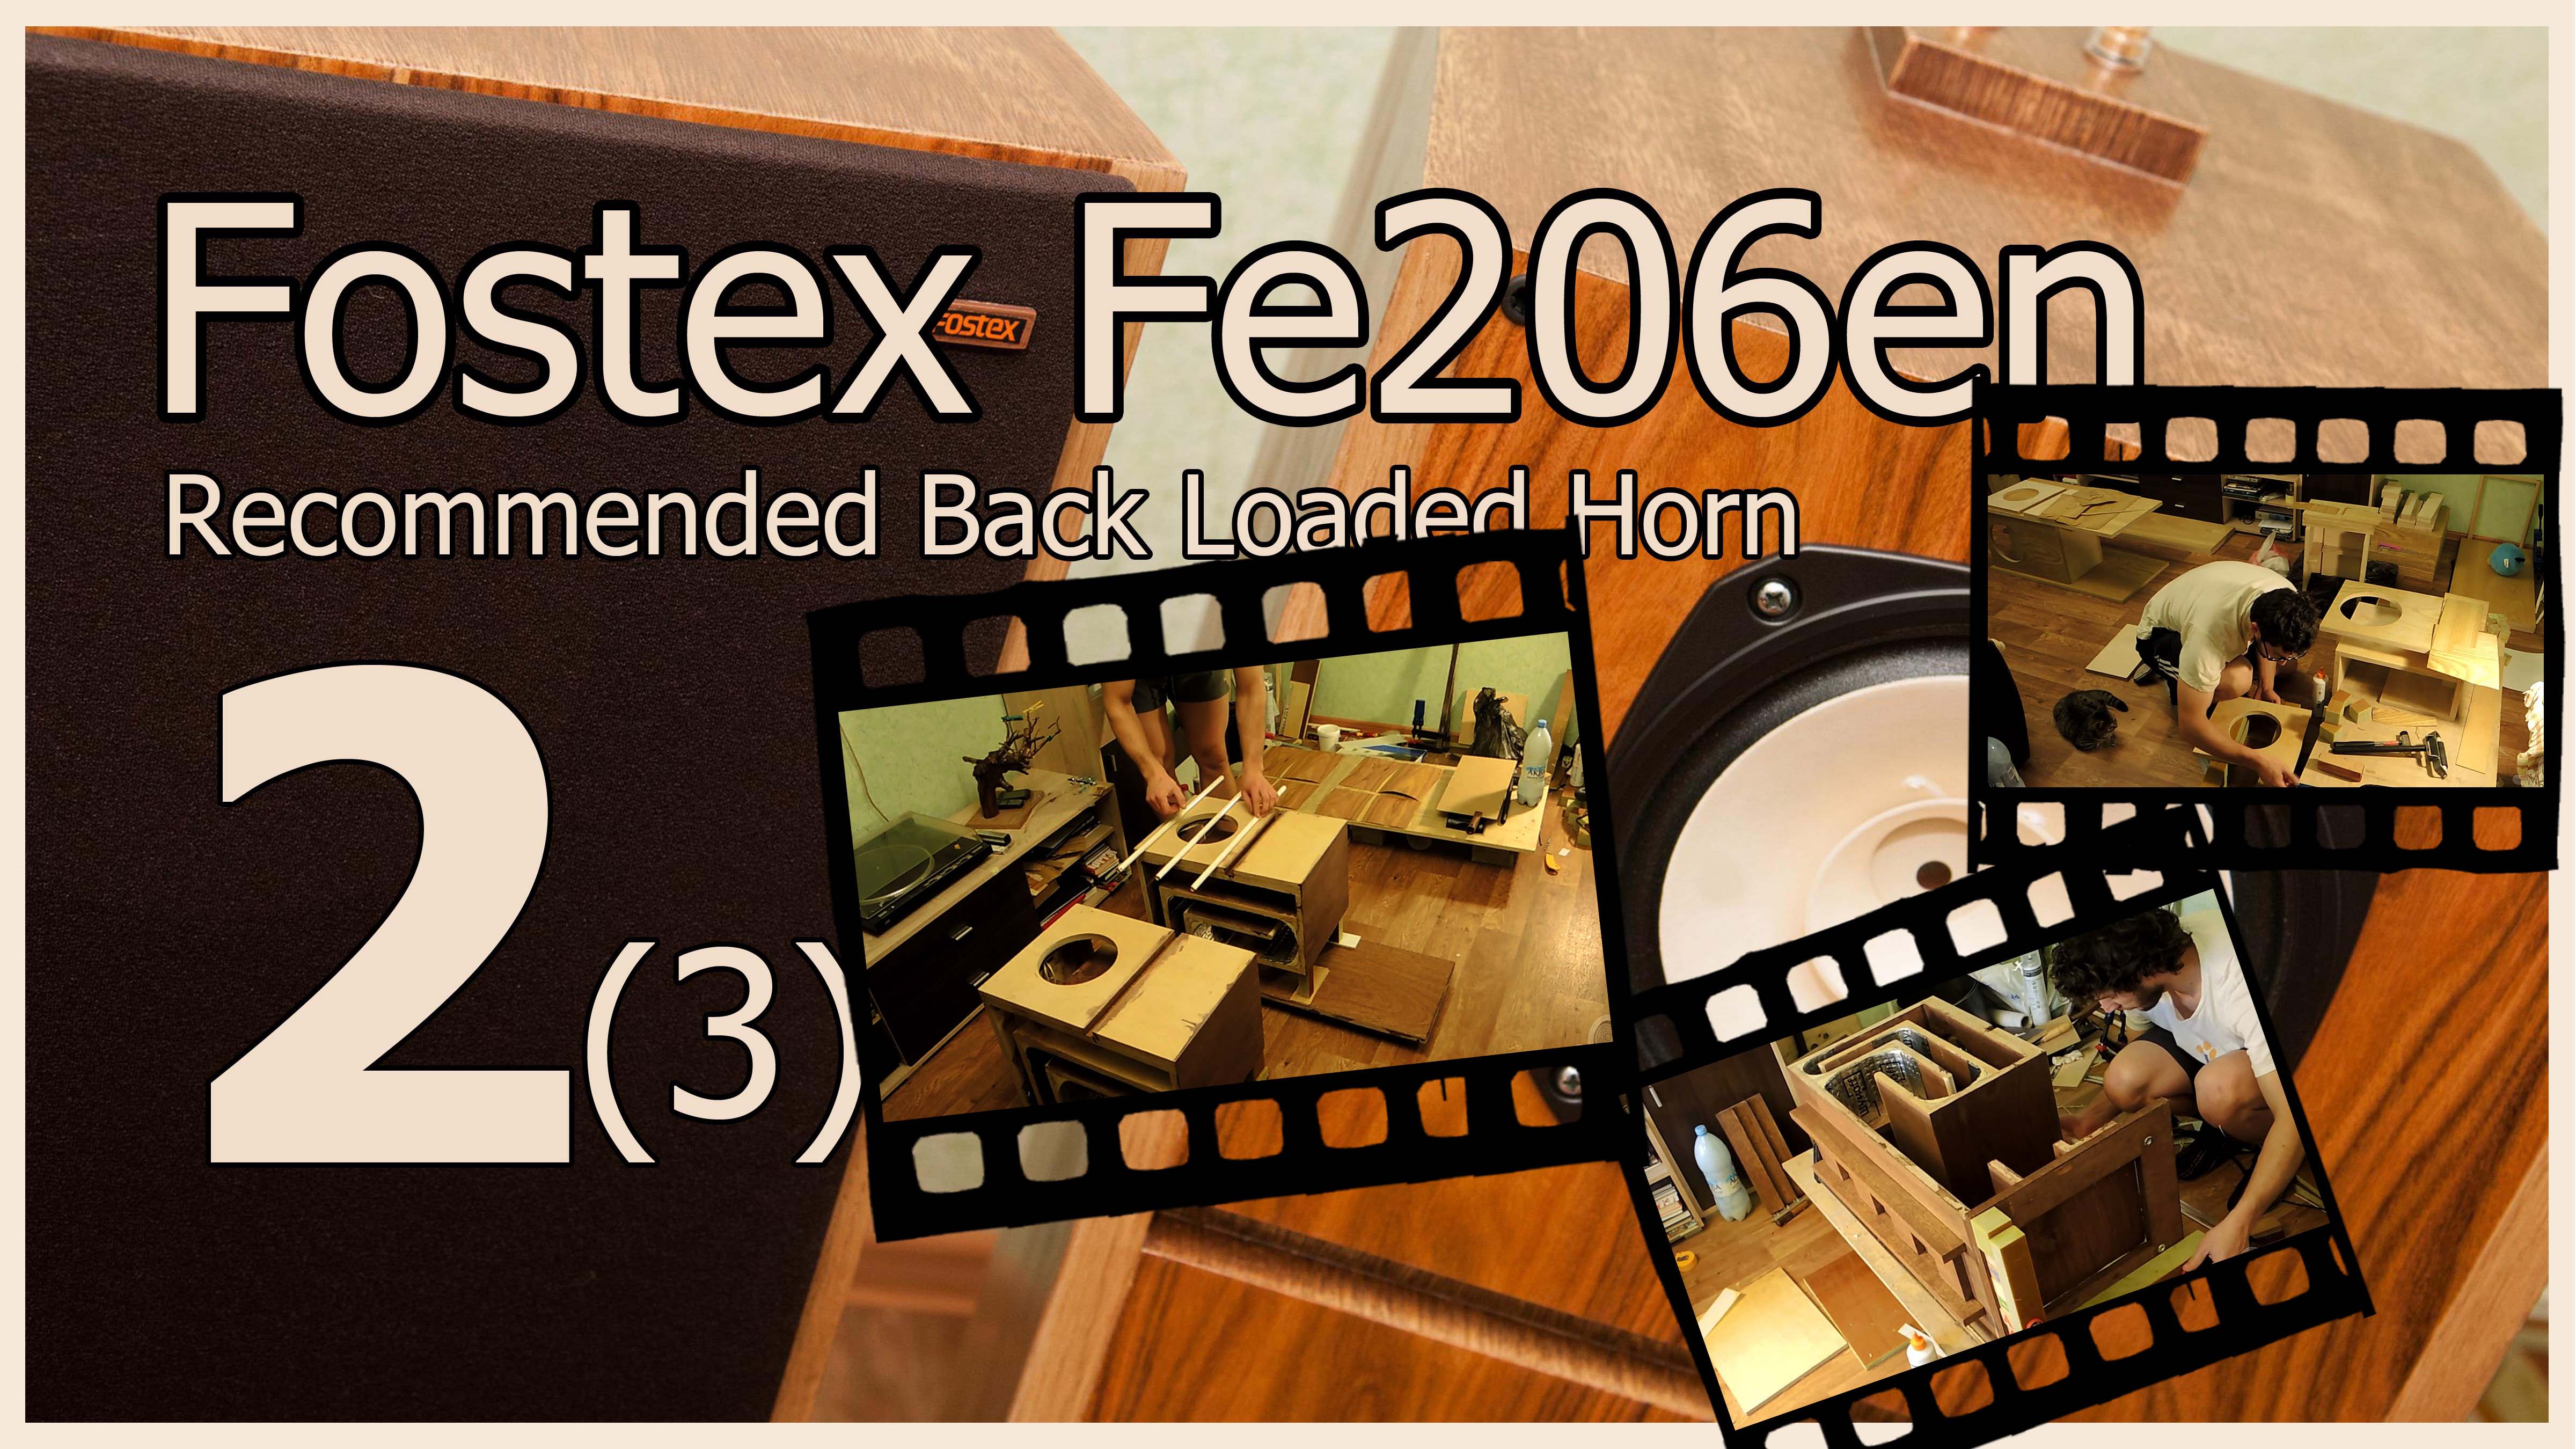 Back loaded. Fostex обратно нагруженный рупор. Fostex 206 en фильтр. Обратный рупор на Fostex Fe 206e чертежи. Fostex 206en кроссовер.